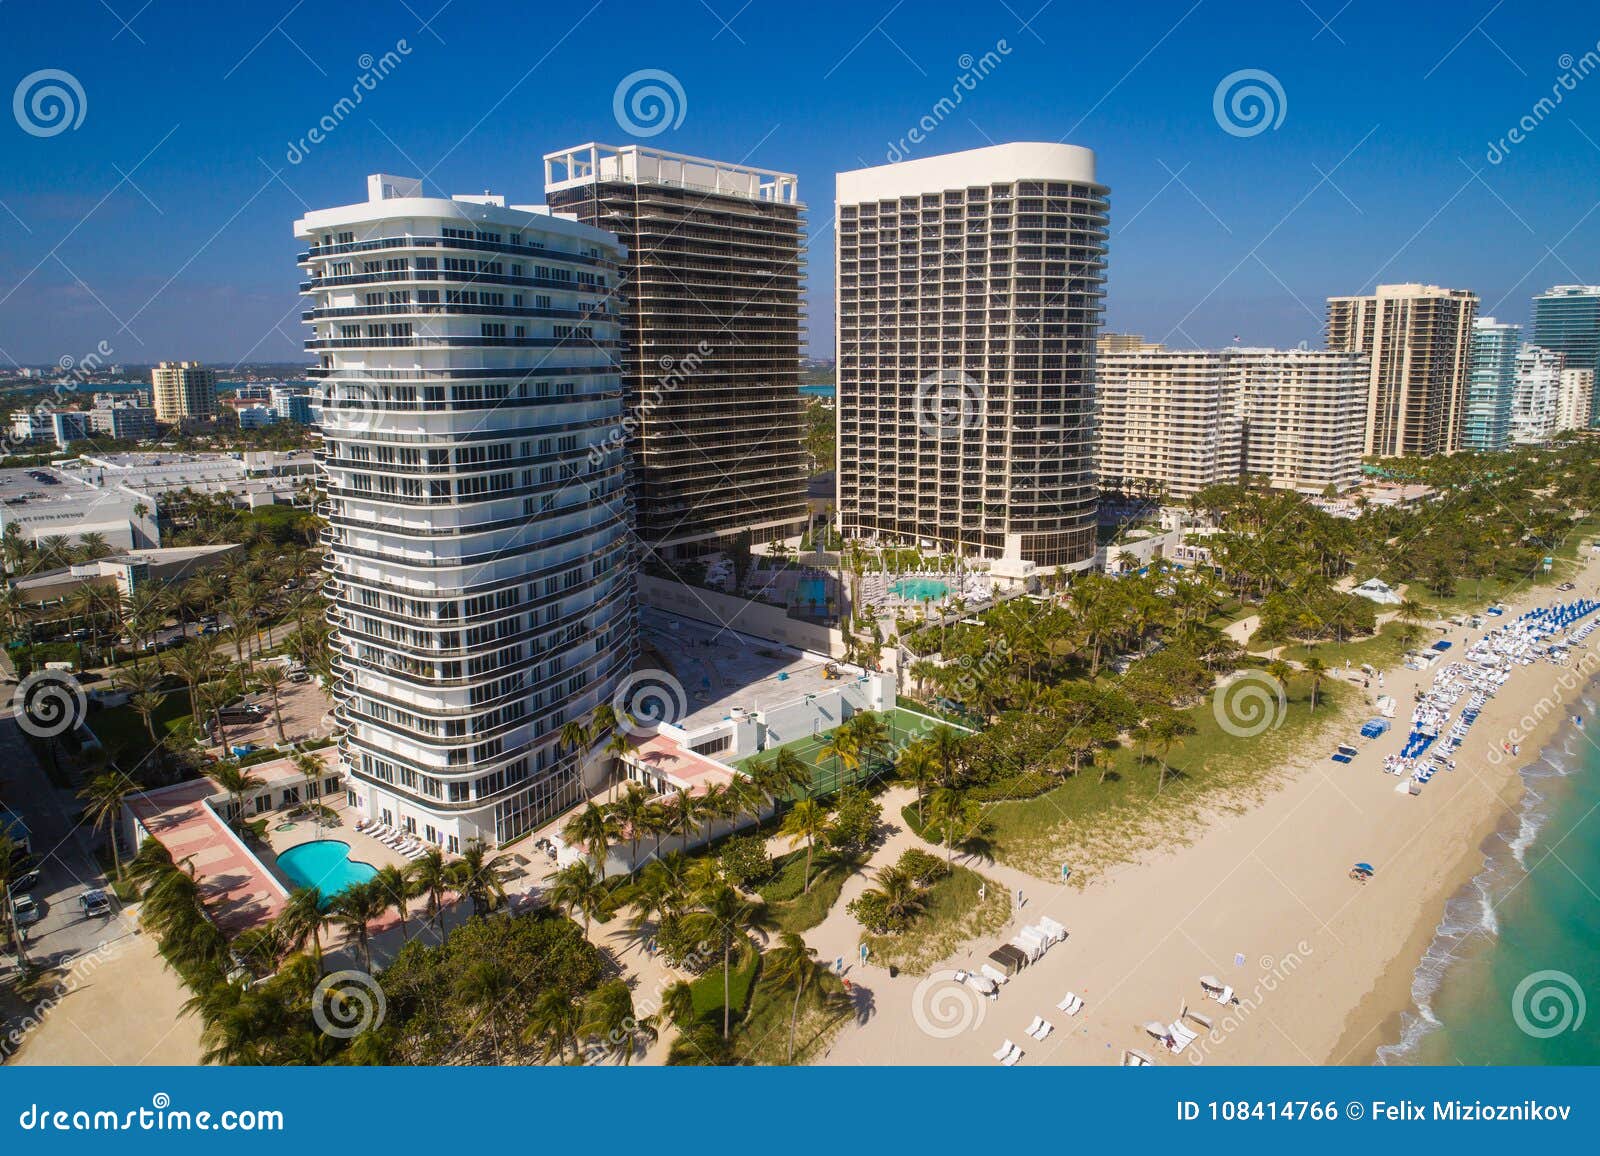 aerial image of beachfront condominiums in bal harbour florida